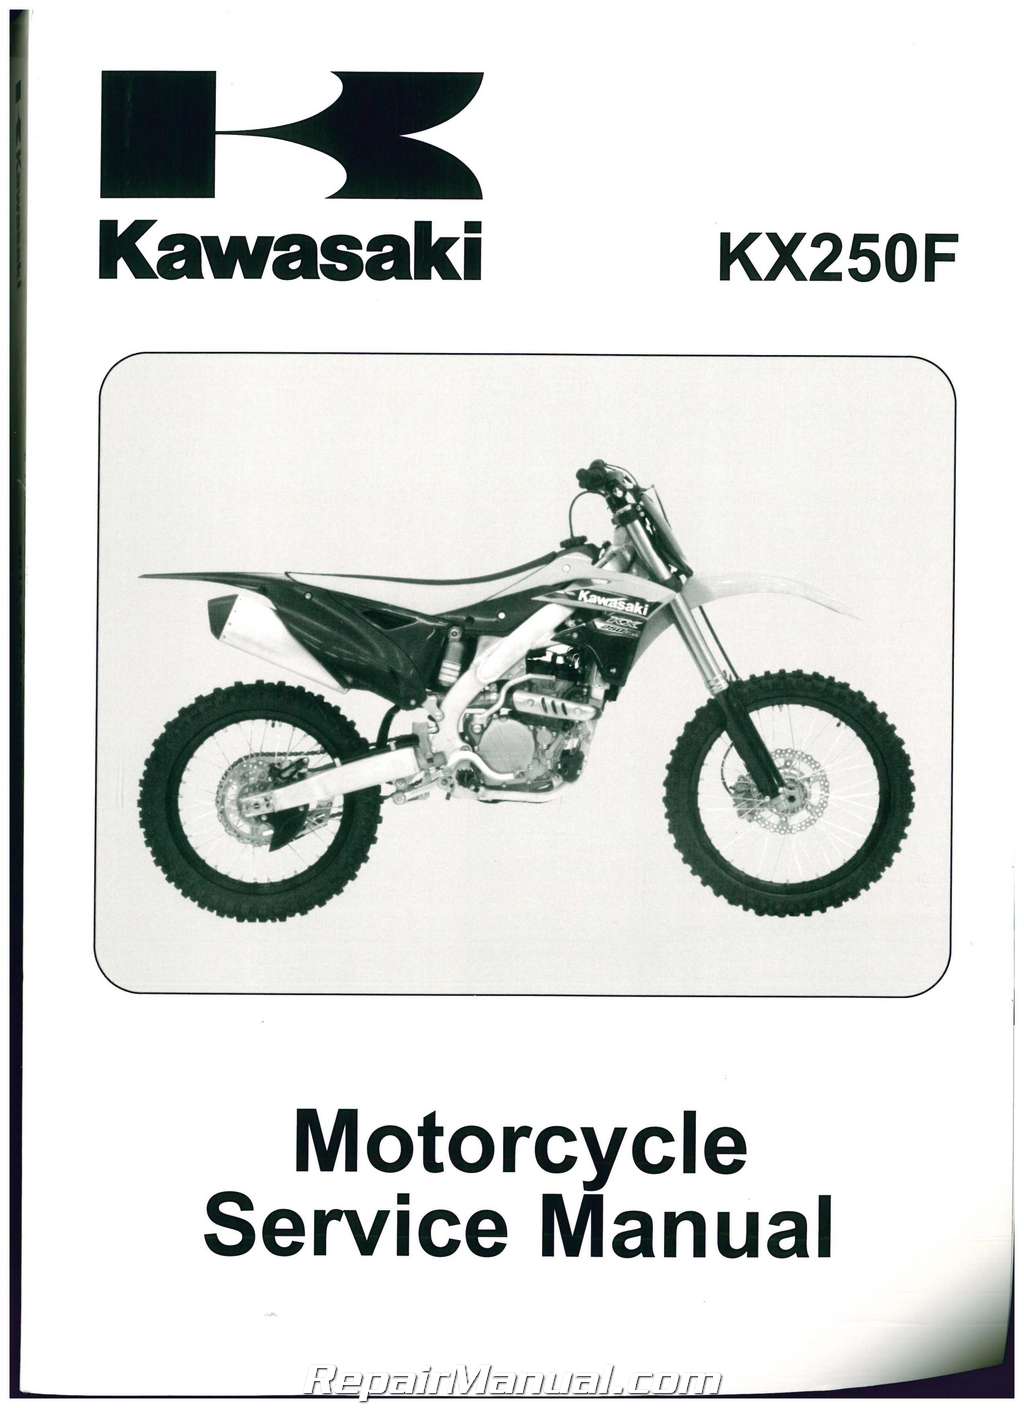 Kawasaki Repair Manual Free Download